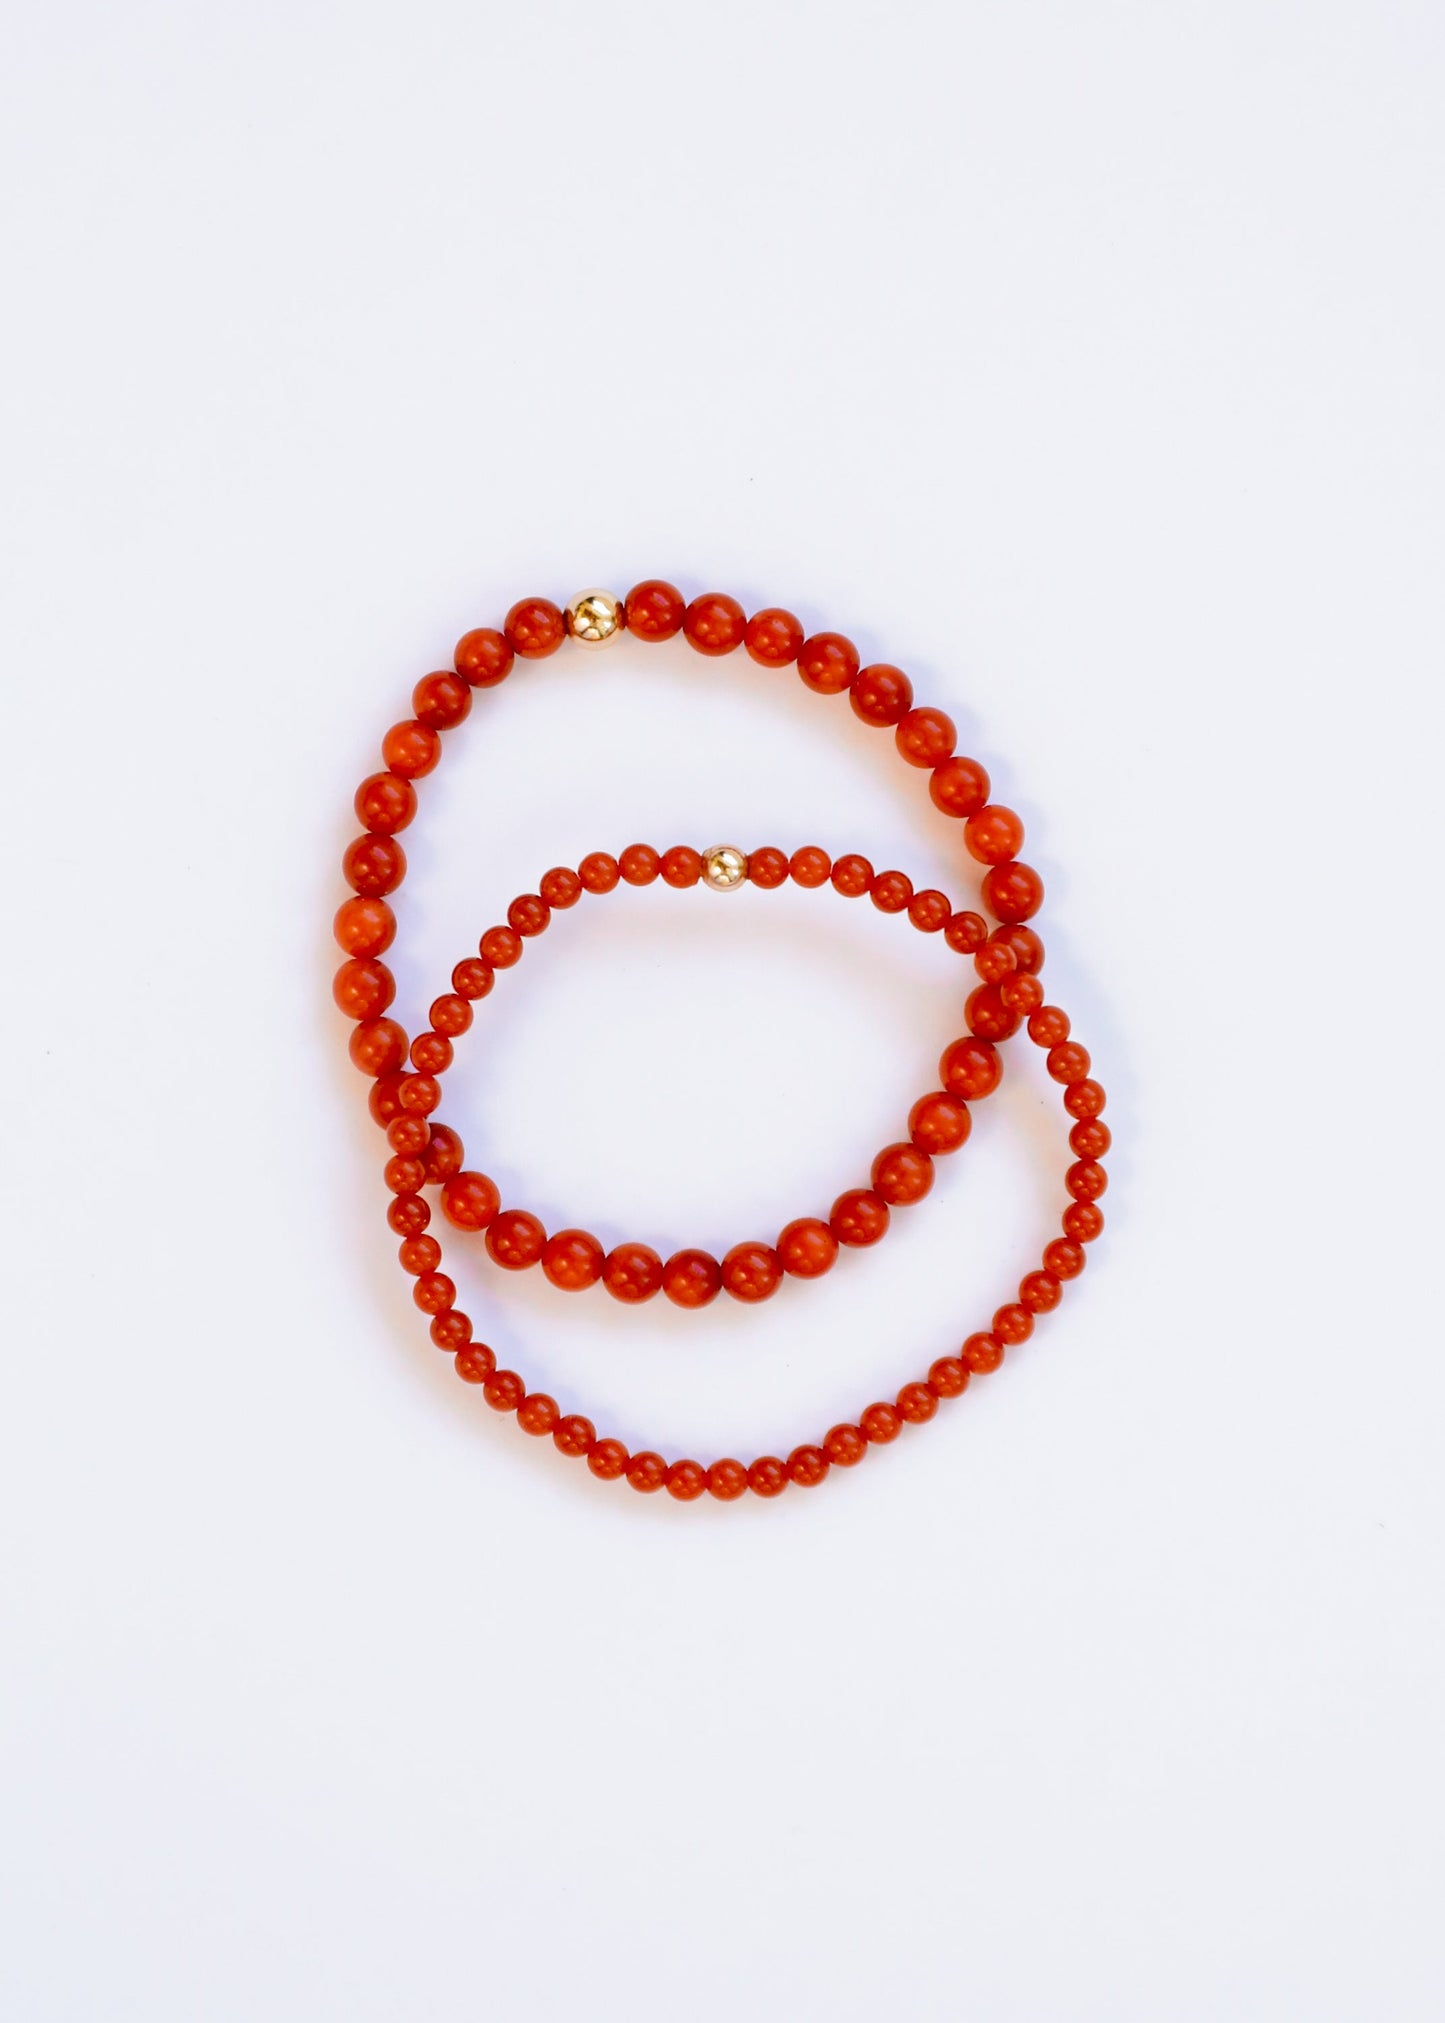 Vintage Collection of Red Coral + Gold || Adult Bracelet ||